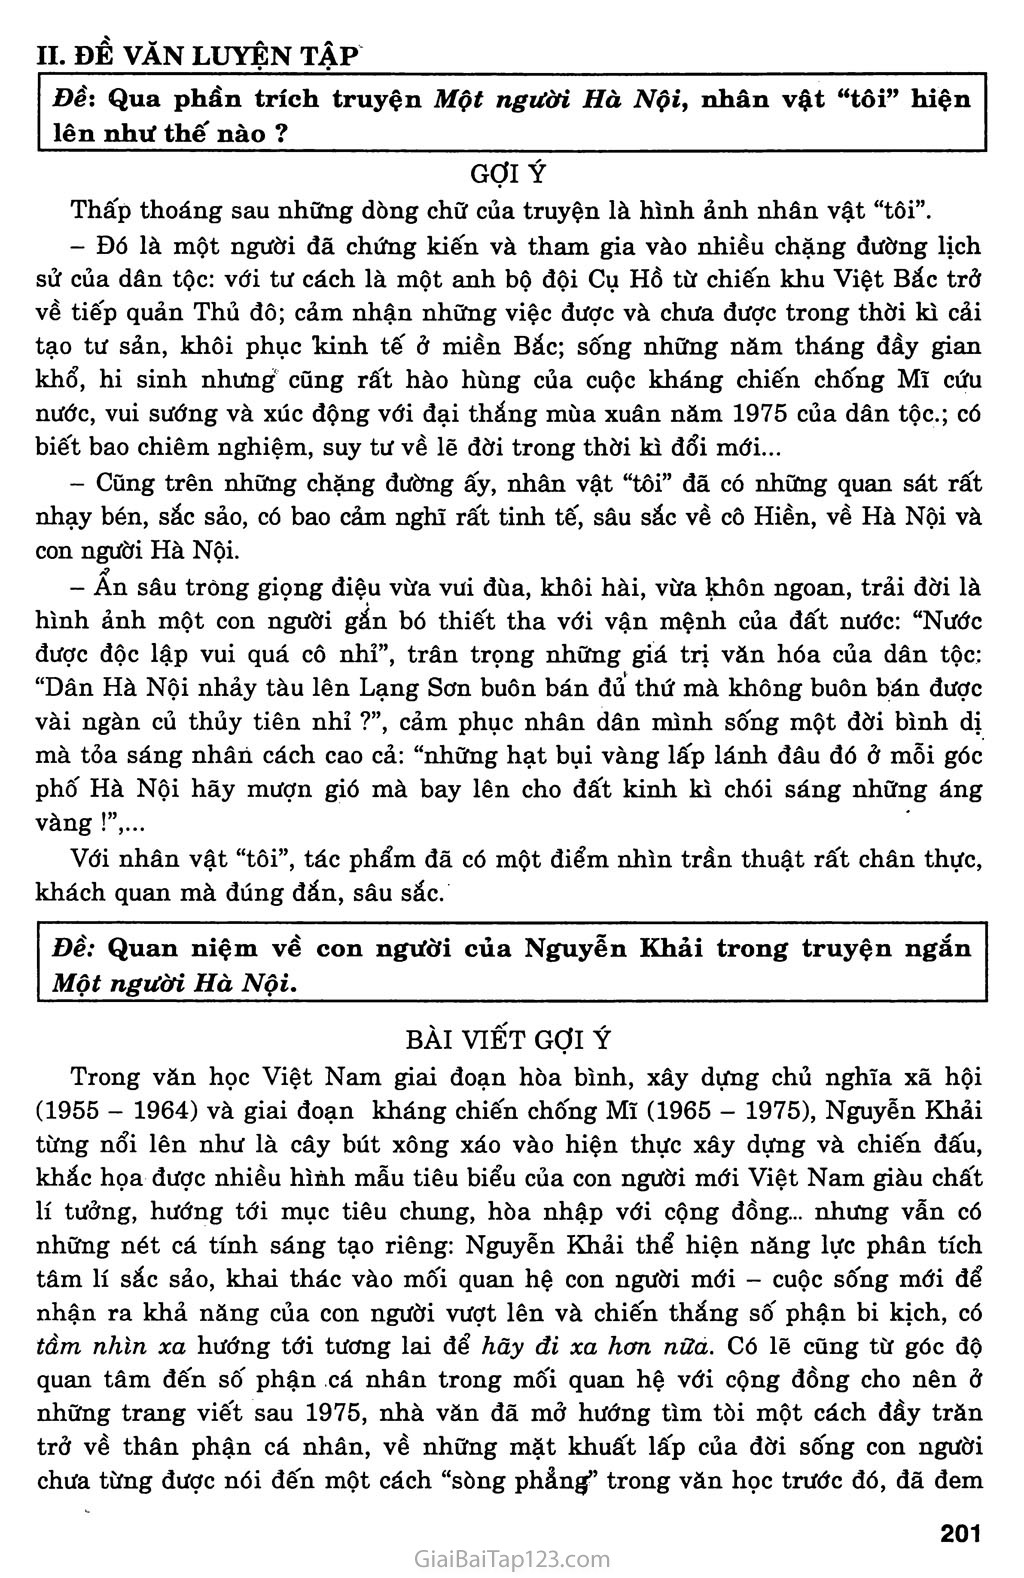 Một người Hà Nội (Nguyễn Khải, 1990) trang 6